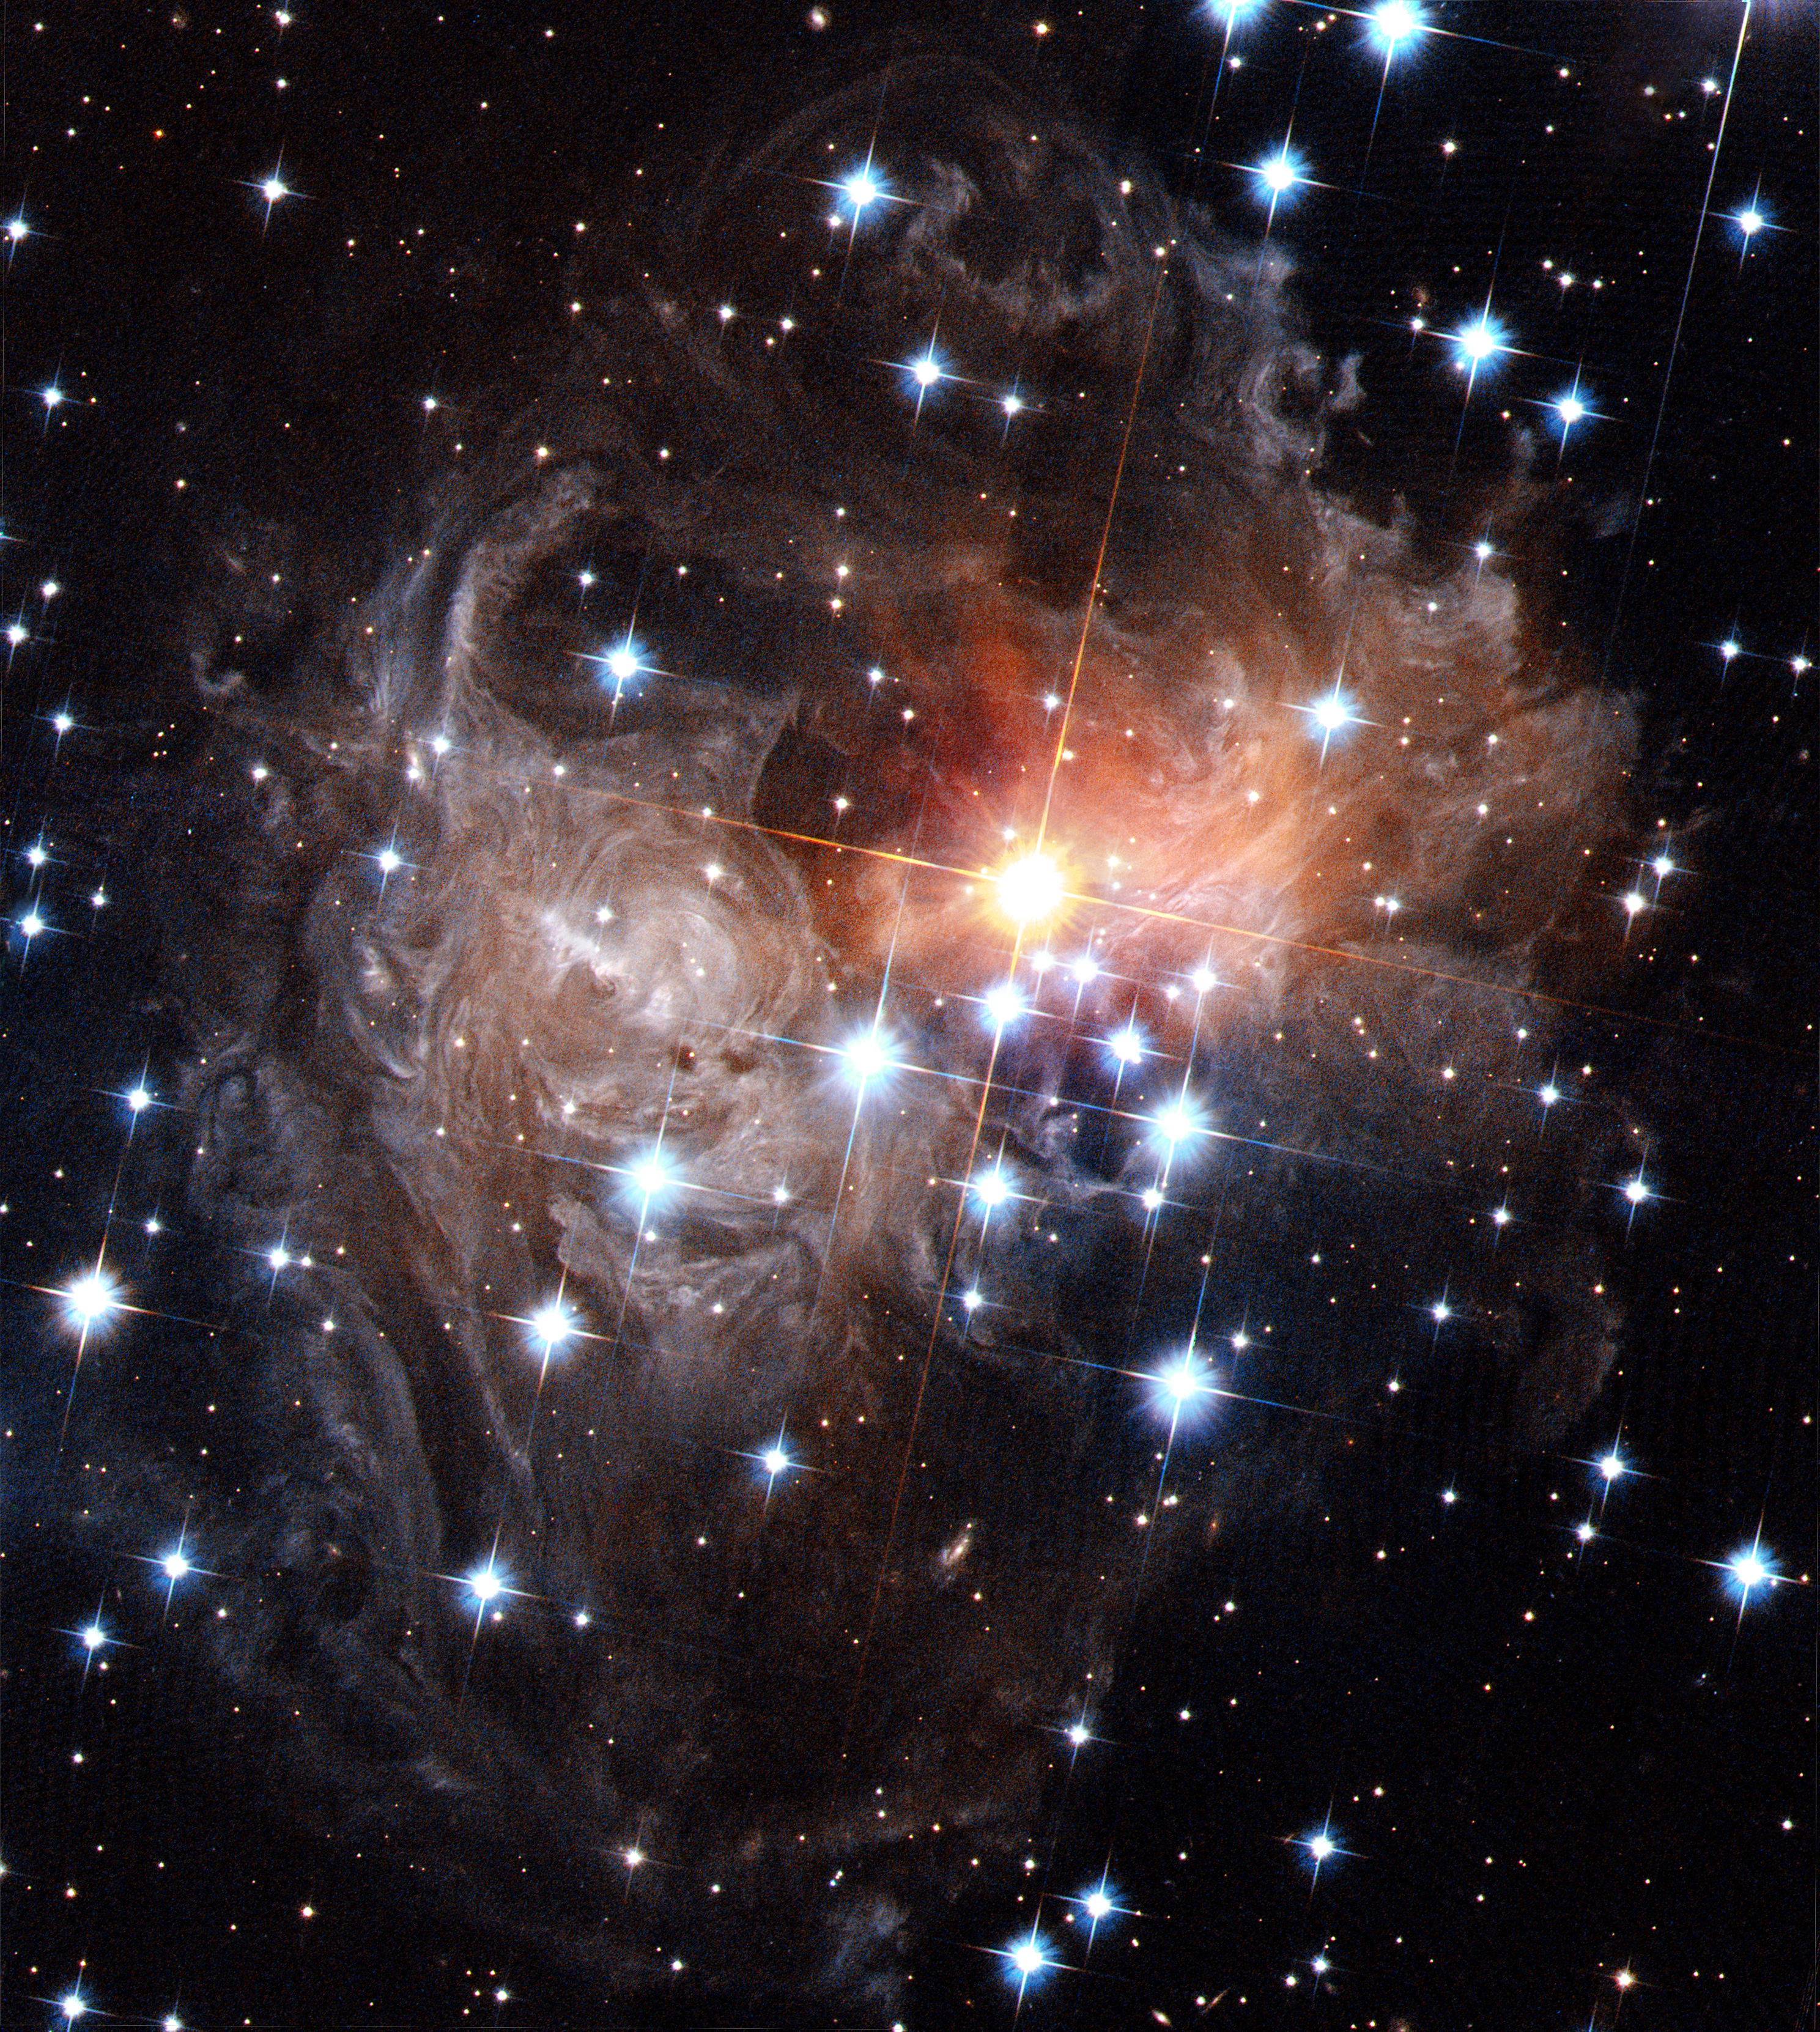 V838 Monocerotis light echo (HST, September 2006)